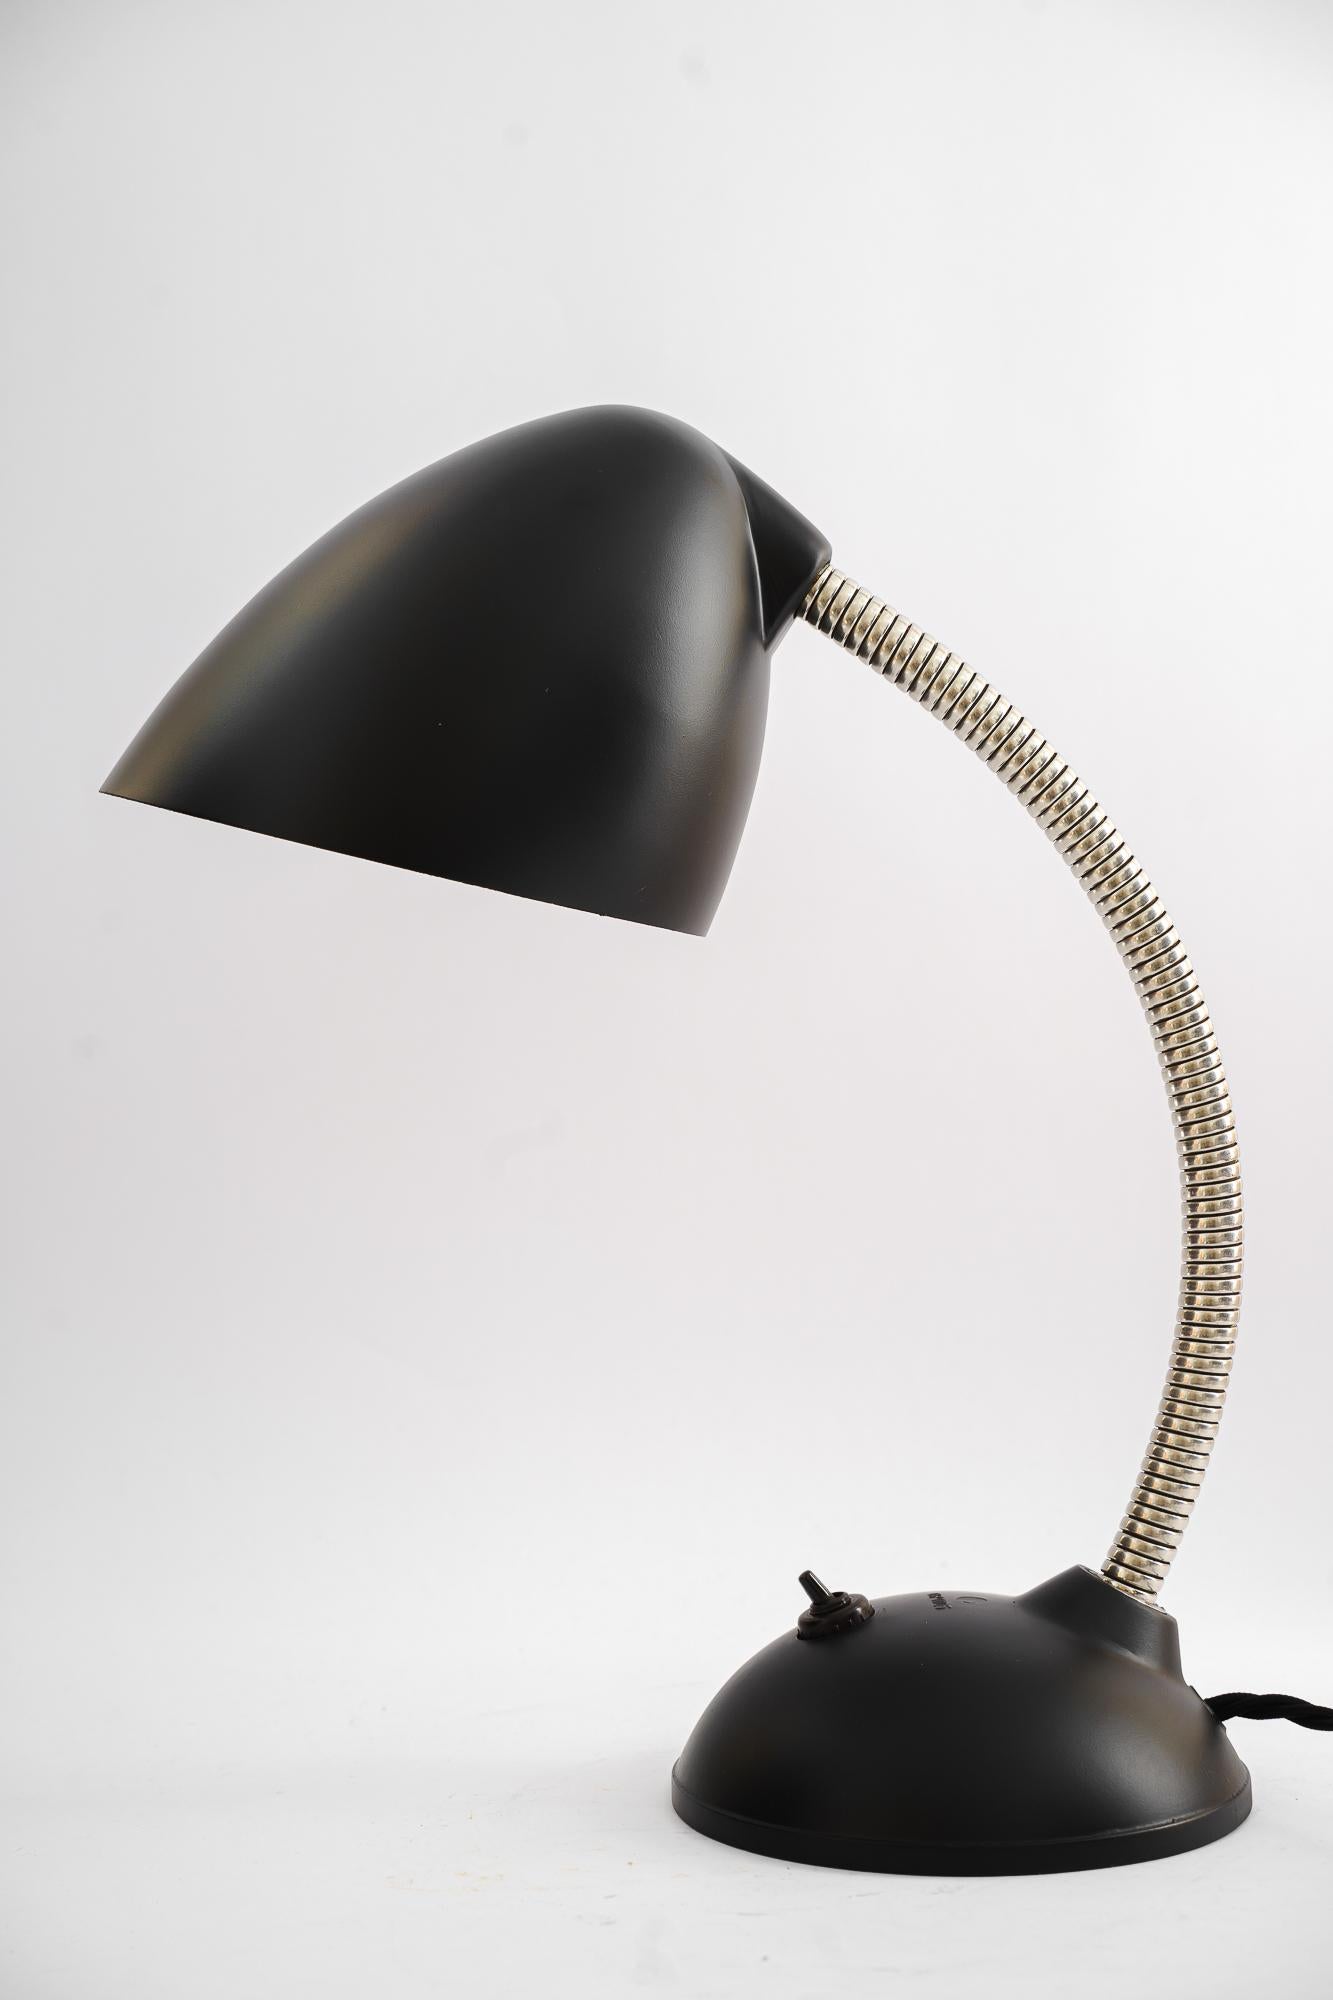 Lampe de table réglable en bakélite, Allemagne, vers les années 1940.
Noirci.
Nickelé.